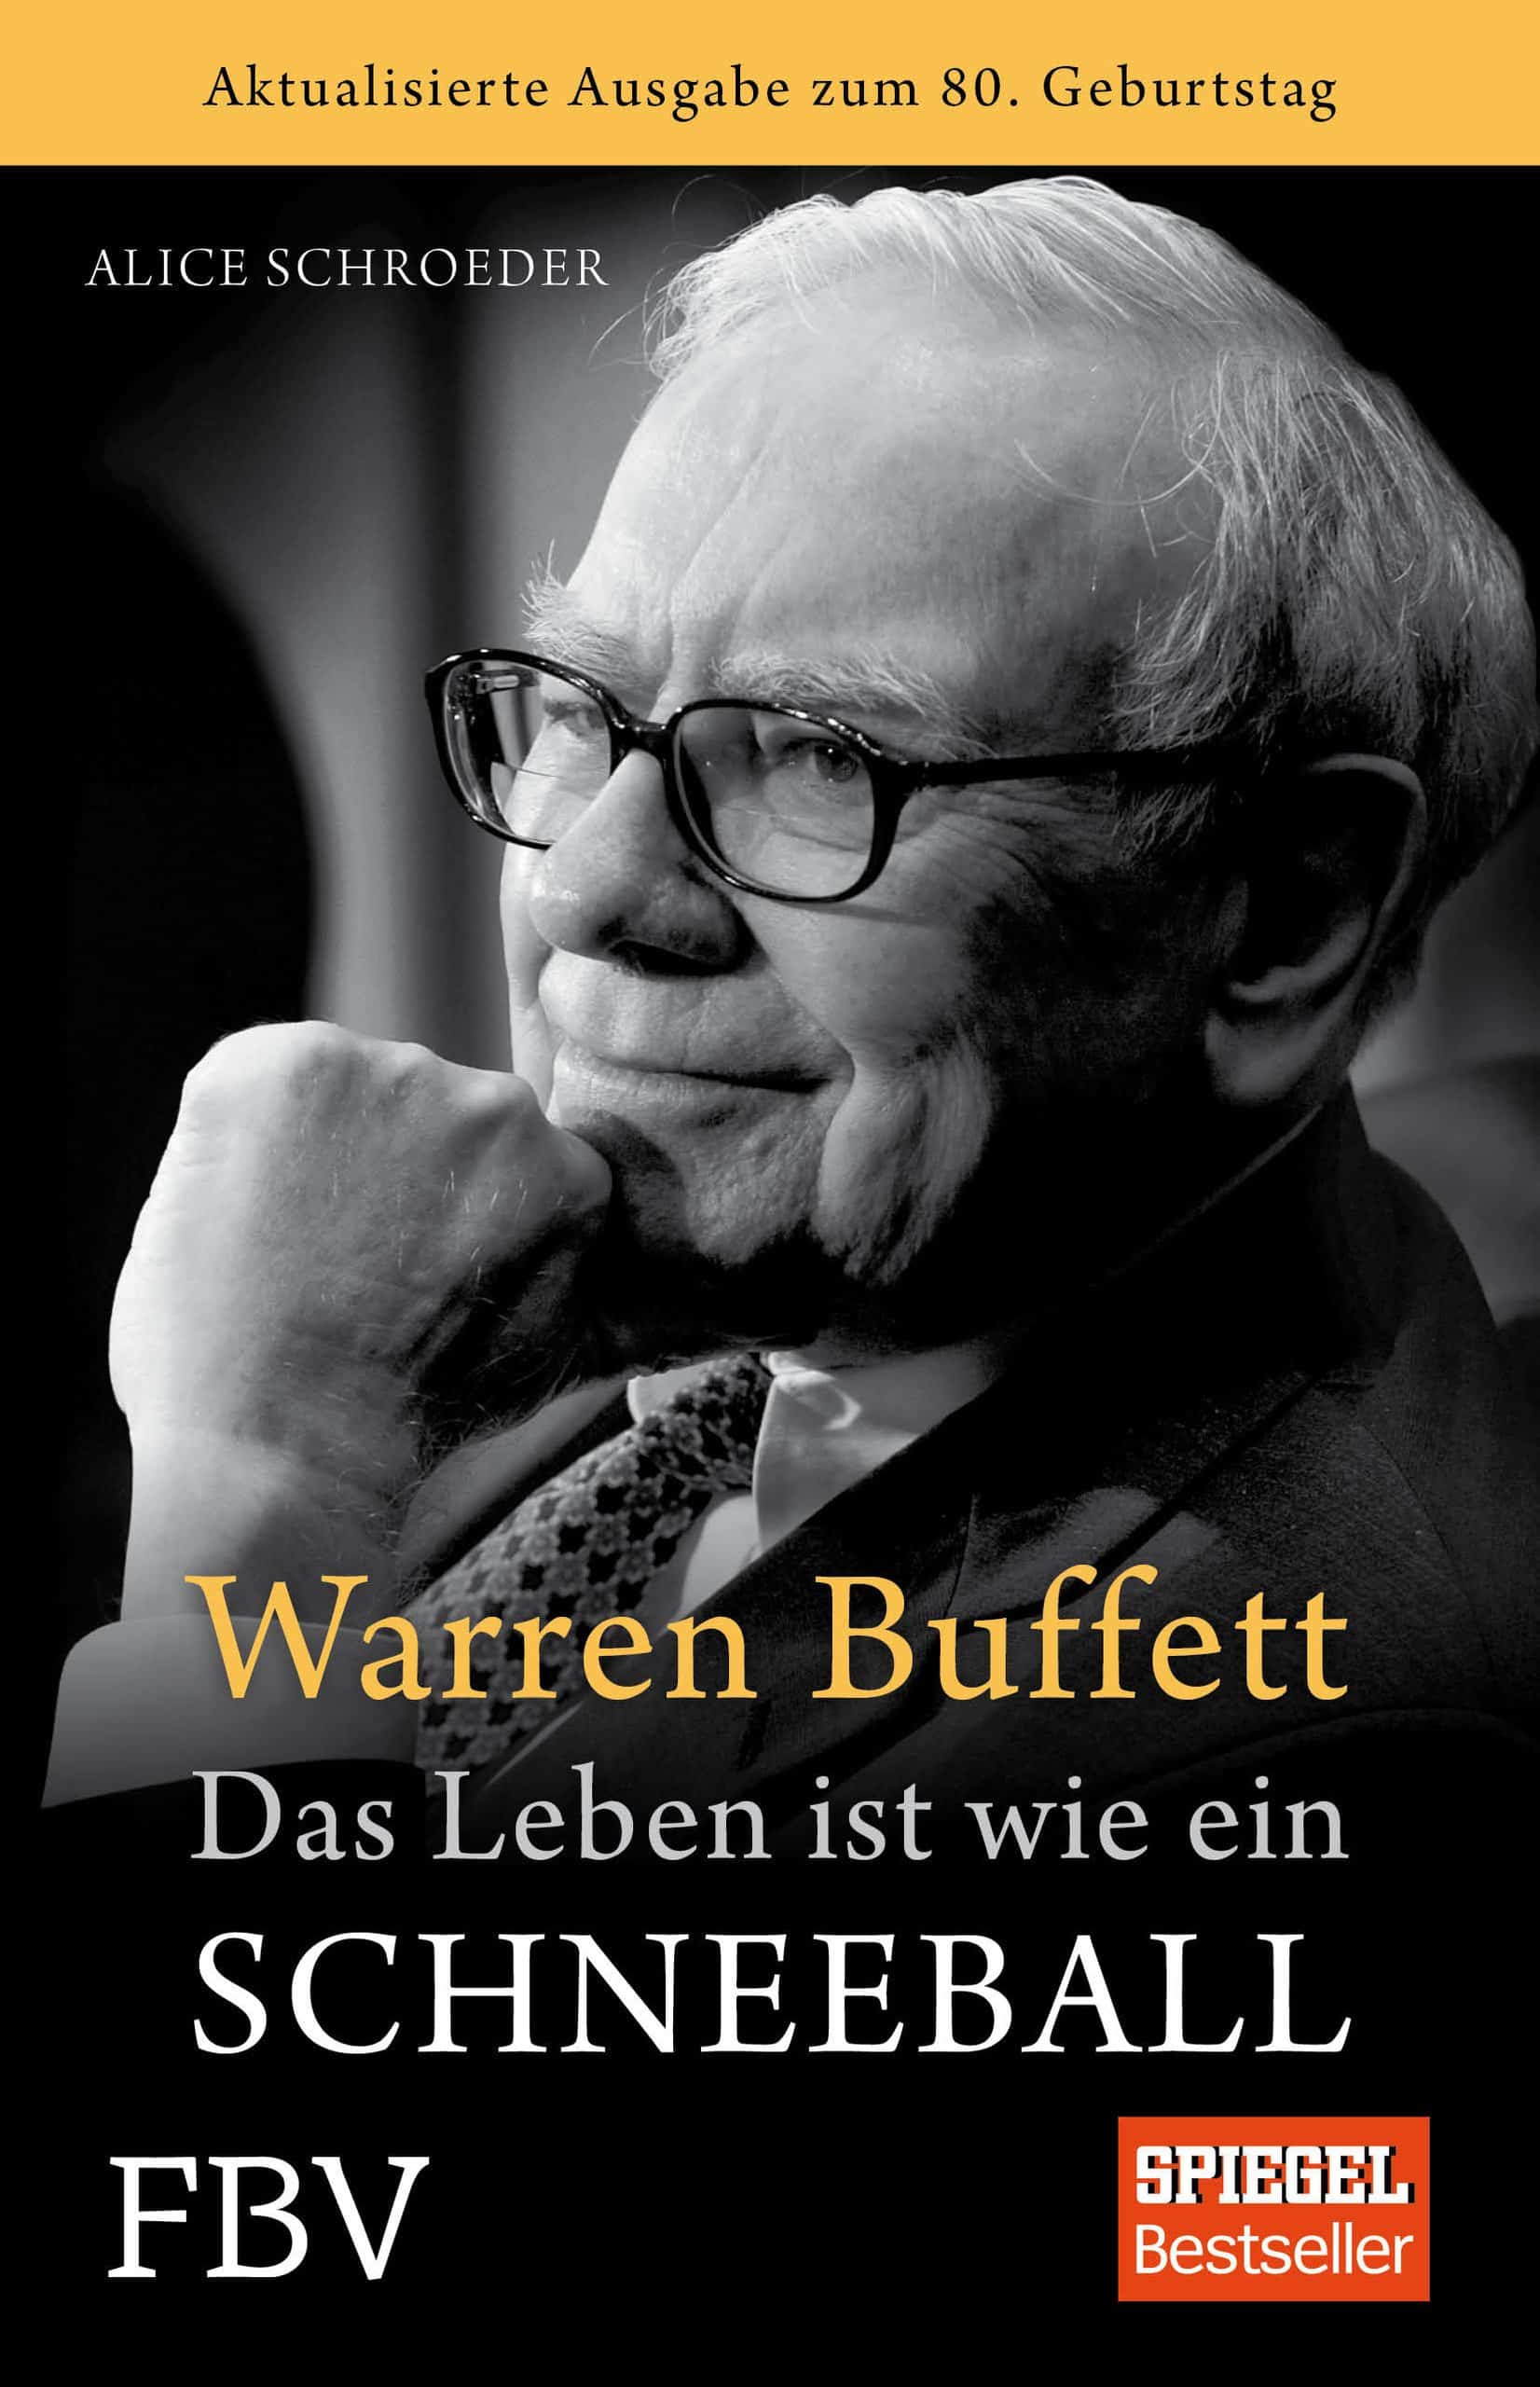 Das leben ist wie ein Schneeball - Warren Buffet